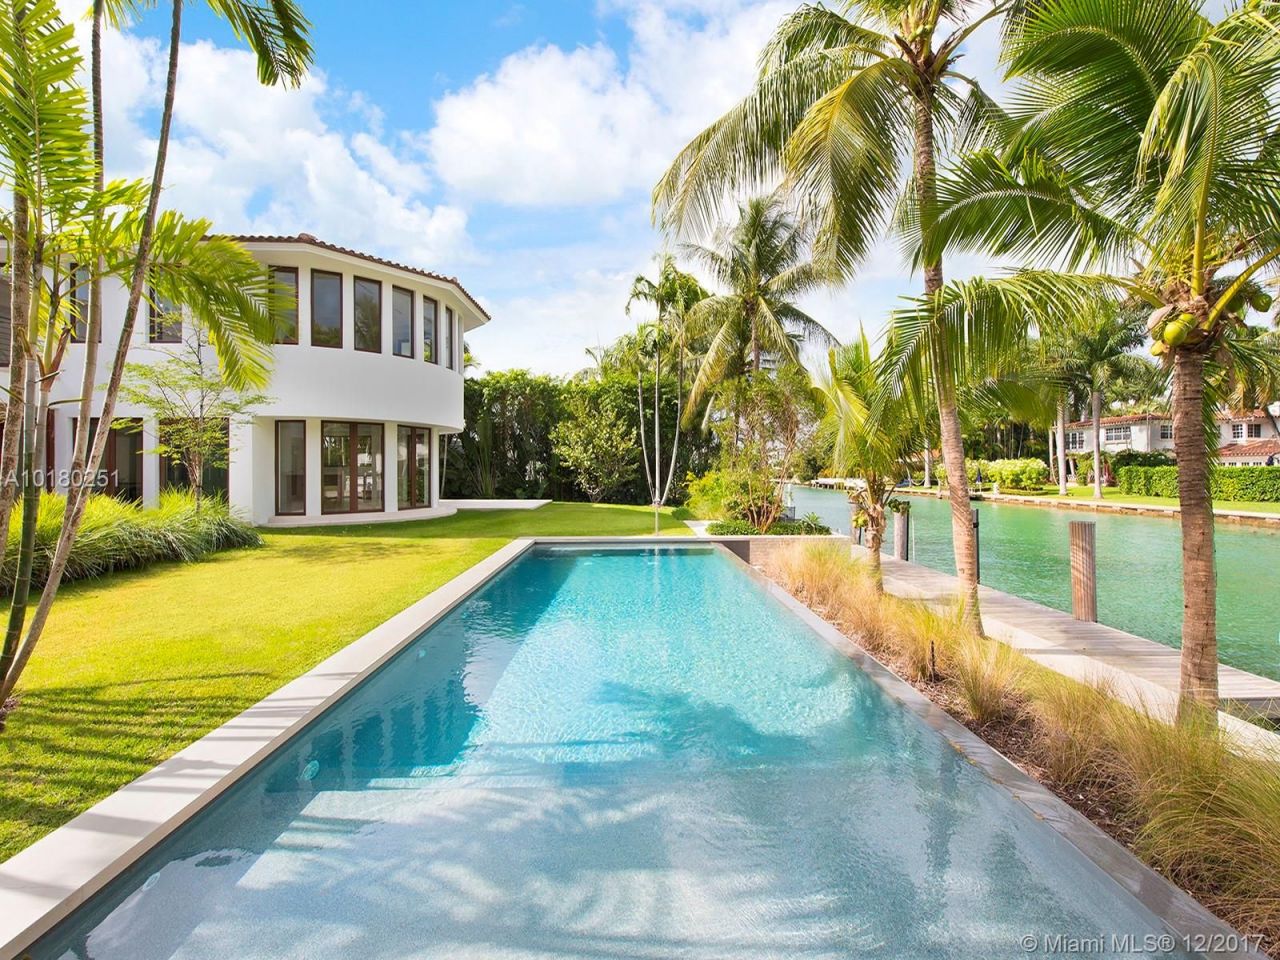 Villa in Miami, USA, 750 m2 - Foto 1